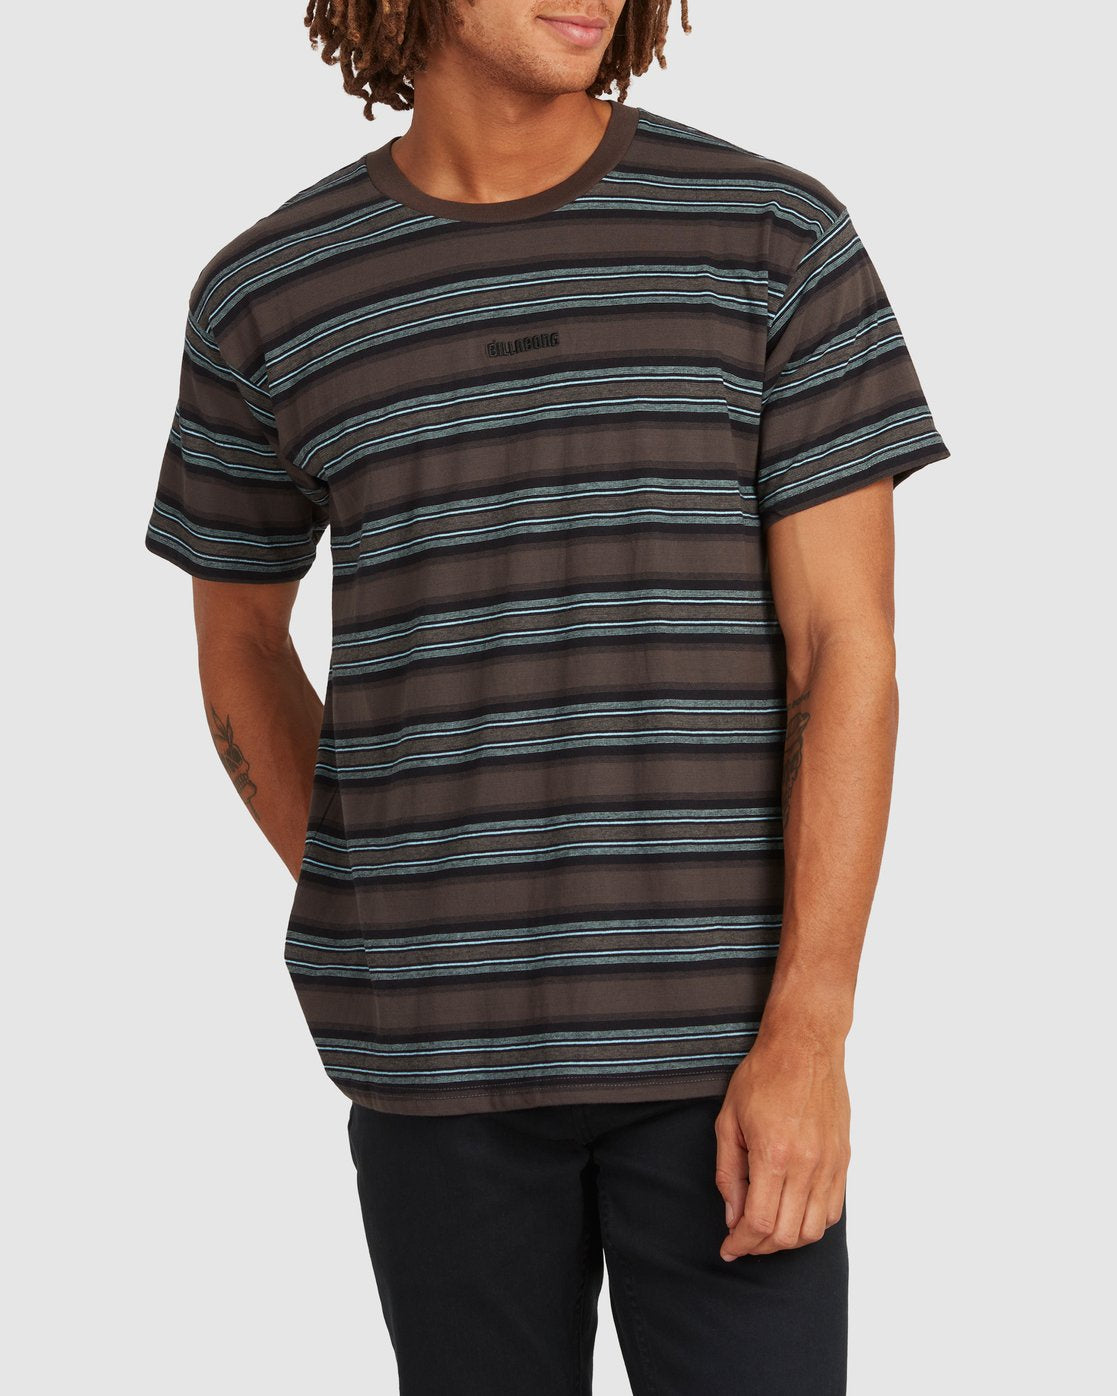 Mixi Stripe T-Shirt